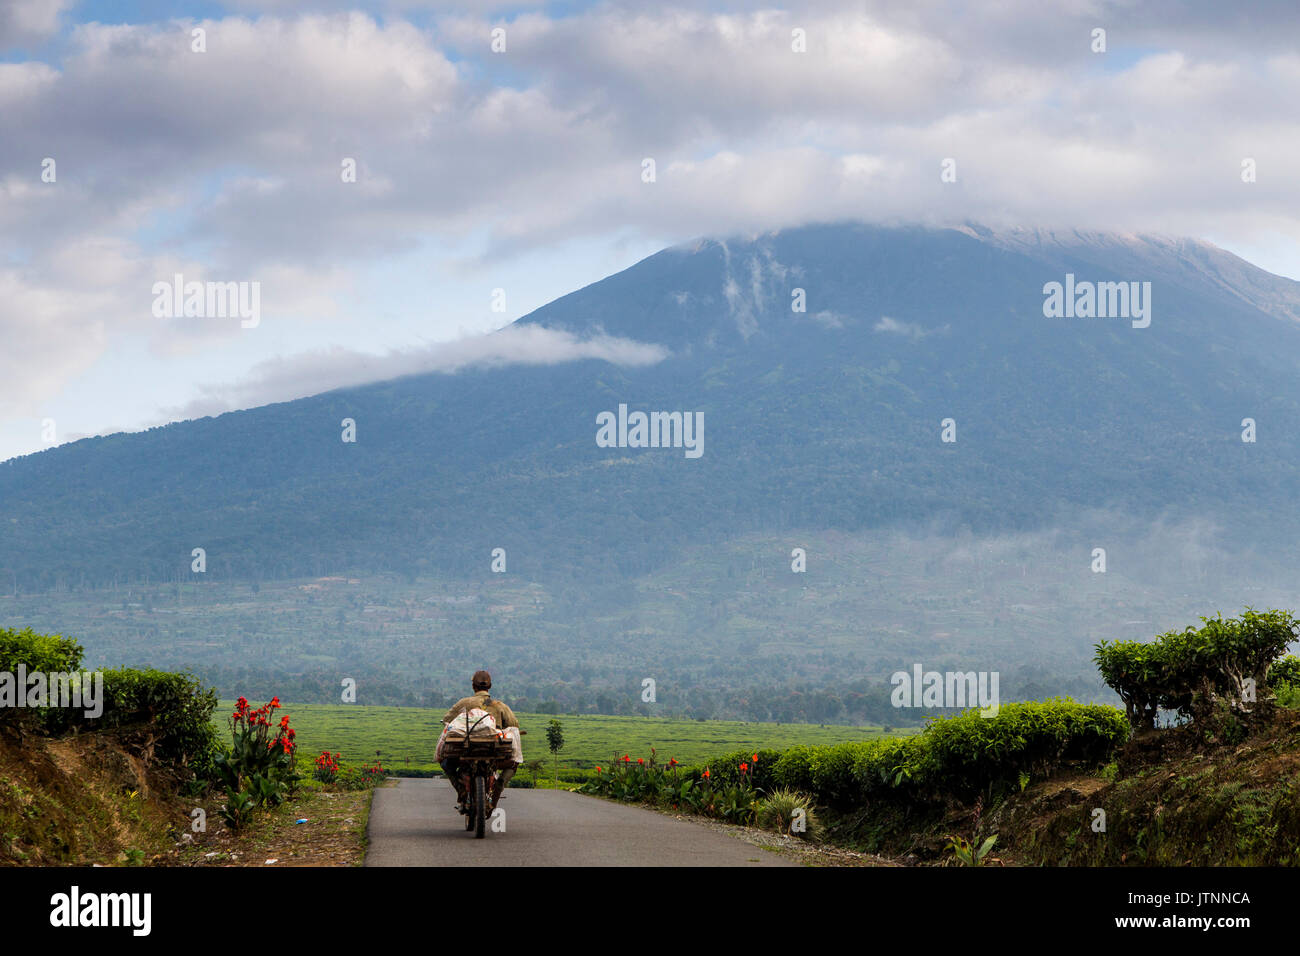 Ein Mann reitet eine kleine Motorrad mit einem Bündel von Produkten in einer engen Straße mit Tee Felder auf beiden Seiten und eine Wolke geladen, schneebedeckten Vulkan am Horizont. Kerinci Tal, Sumatra, Indonesien Stockfoto